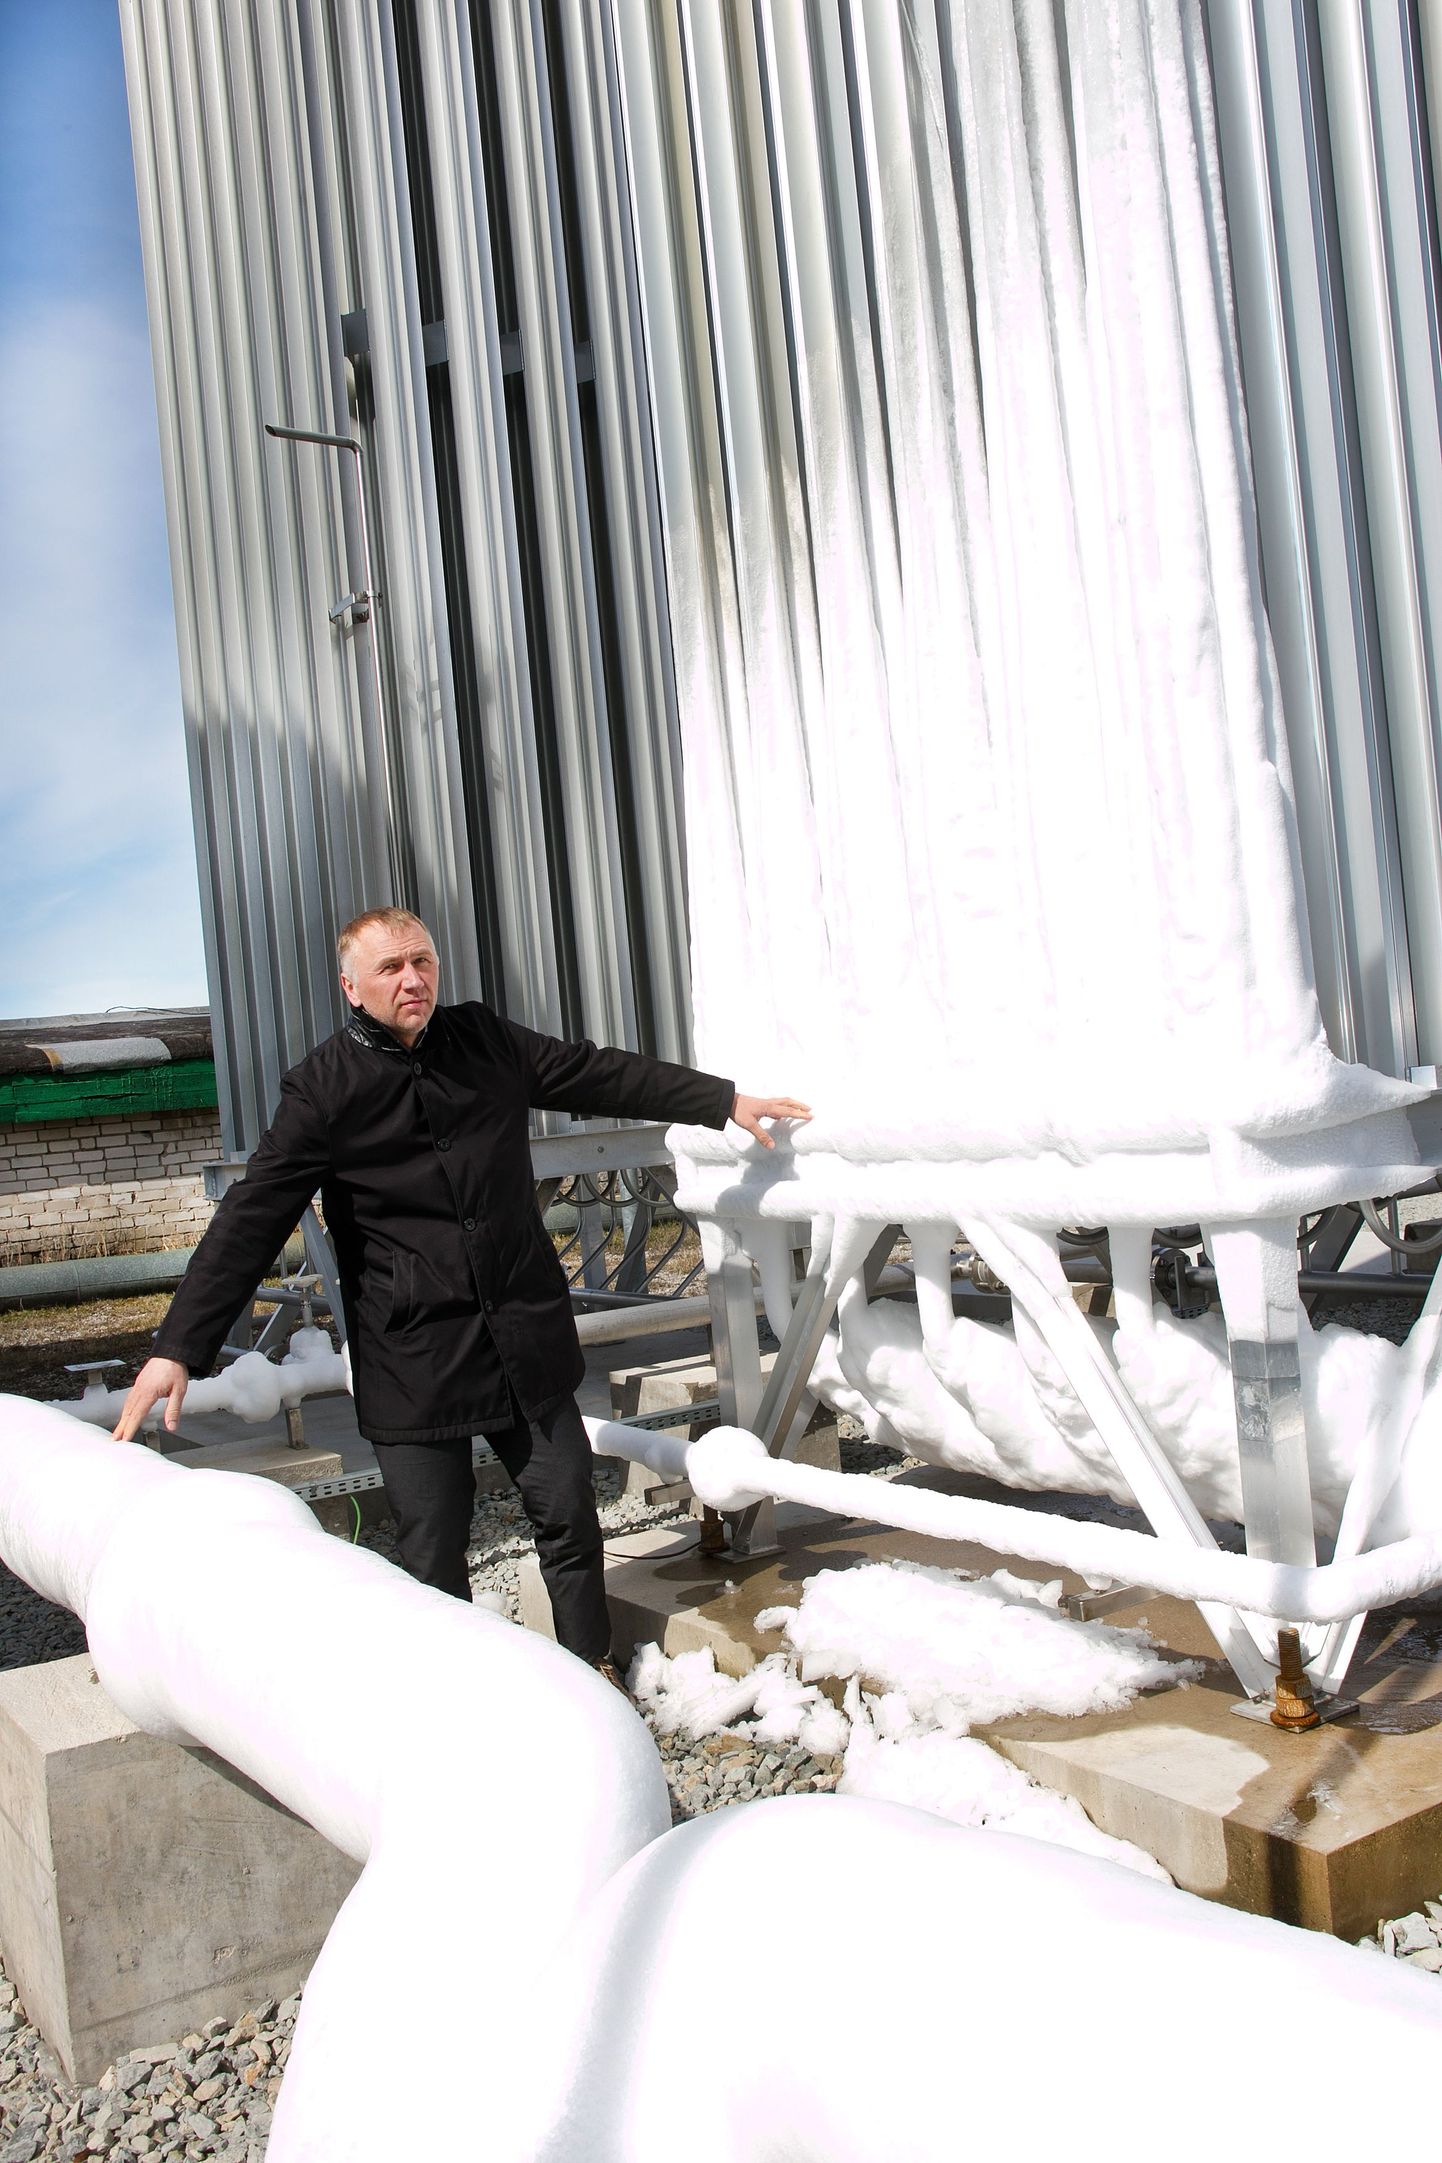 Eesti esimese tööstusettevõttena aasta tagasi Venemaalt tarnitavat LNGd kasutama hakanud Saaremaa Piimatööstuse juht Ülo Kivine hakkaks gaasi ostma Alexela rajatavast Paldiski terminalist, kui pakutakse soodsamat hinda.